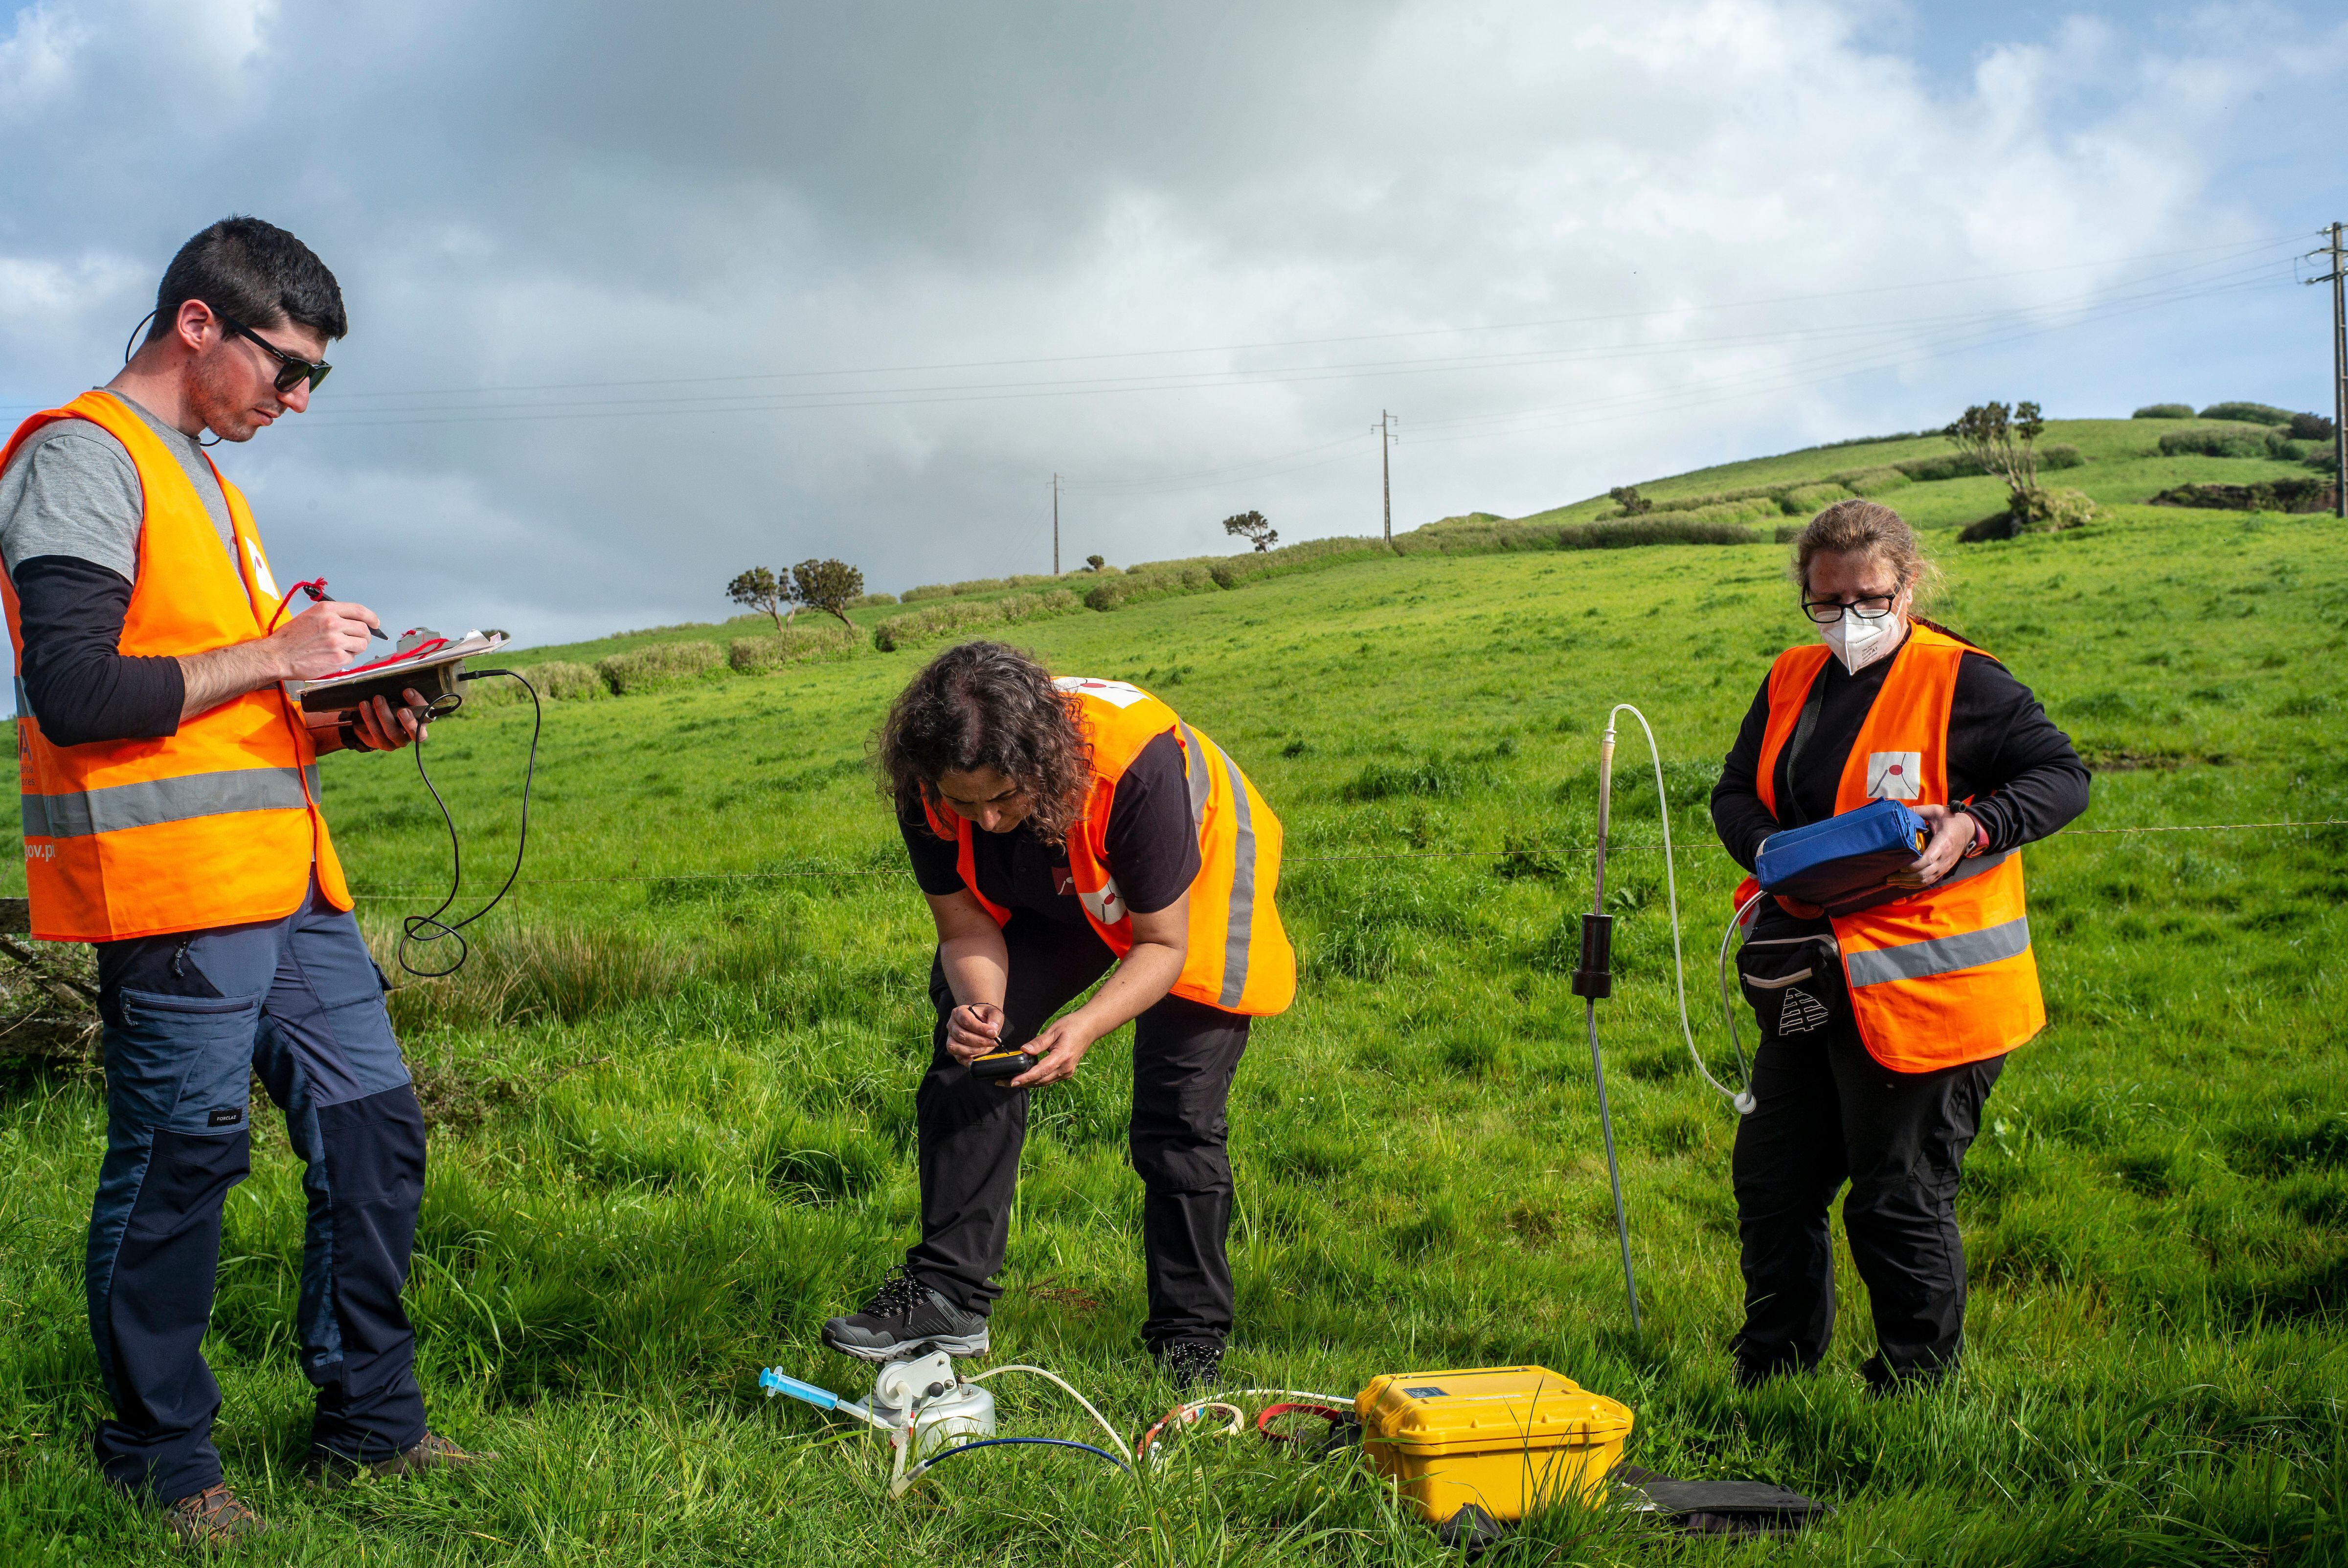 Los vulcanólogos Rui Silva, Fátima Viveiros y Catarina Silva hacen mediciones en la isla de San Jorge, Azores, a finales de abril.